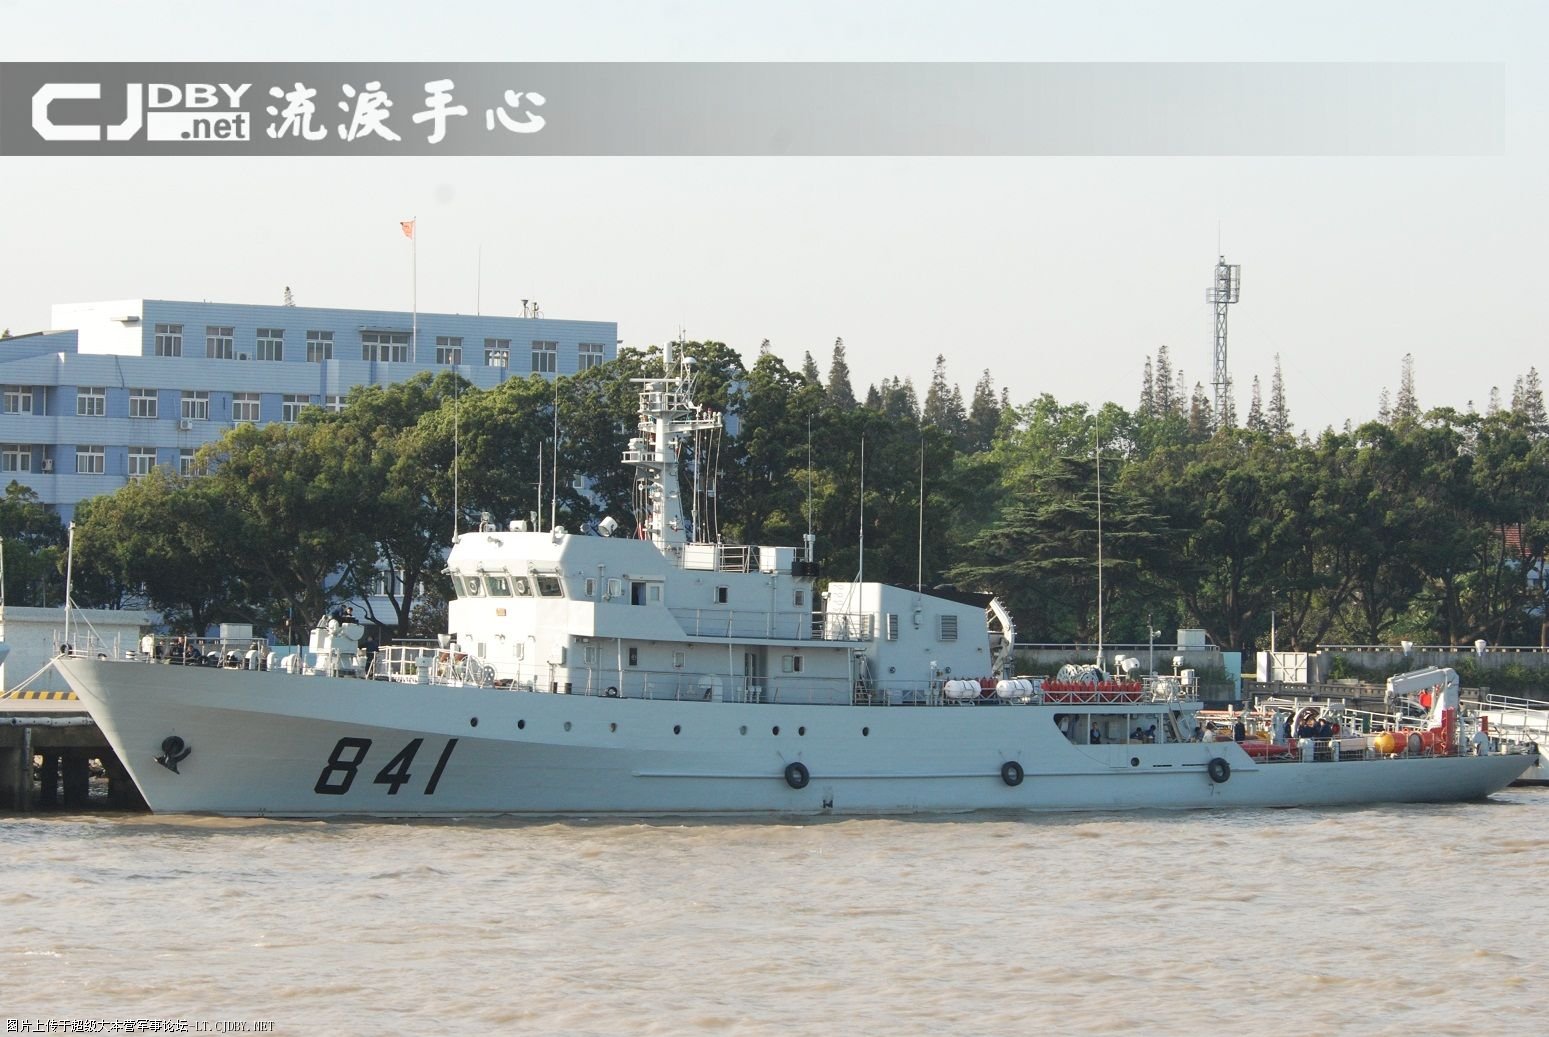 江岛级扫雷艇图片